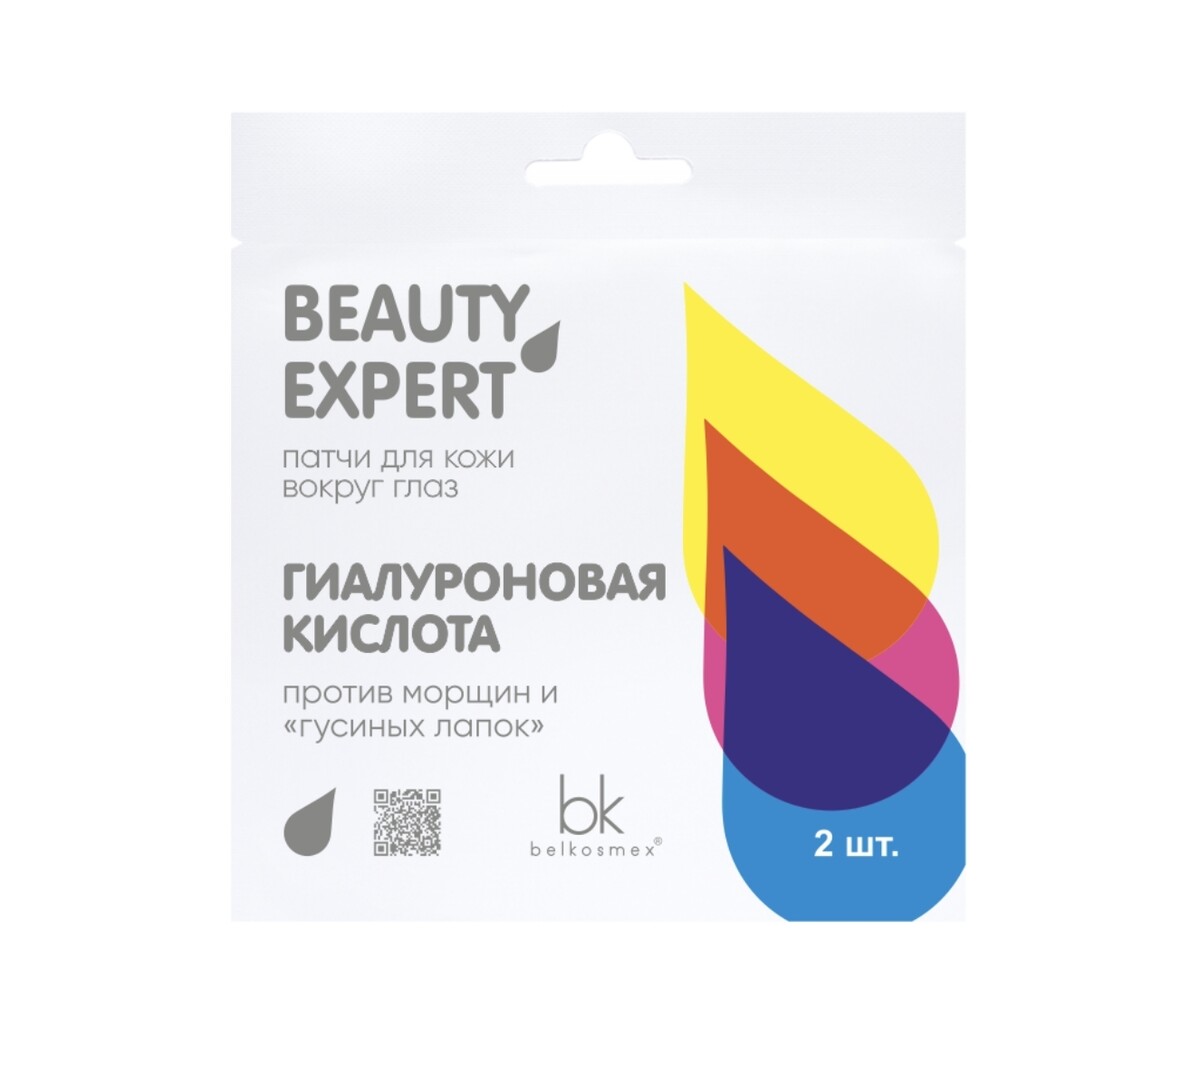       beauty expert 3